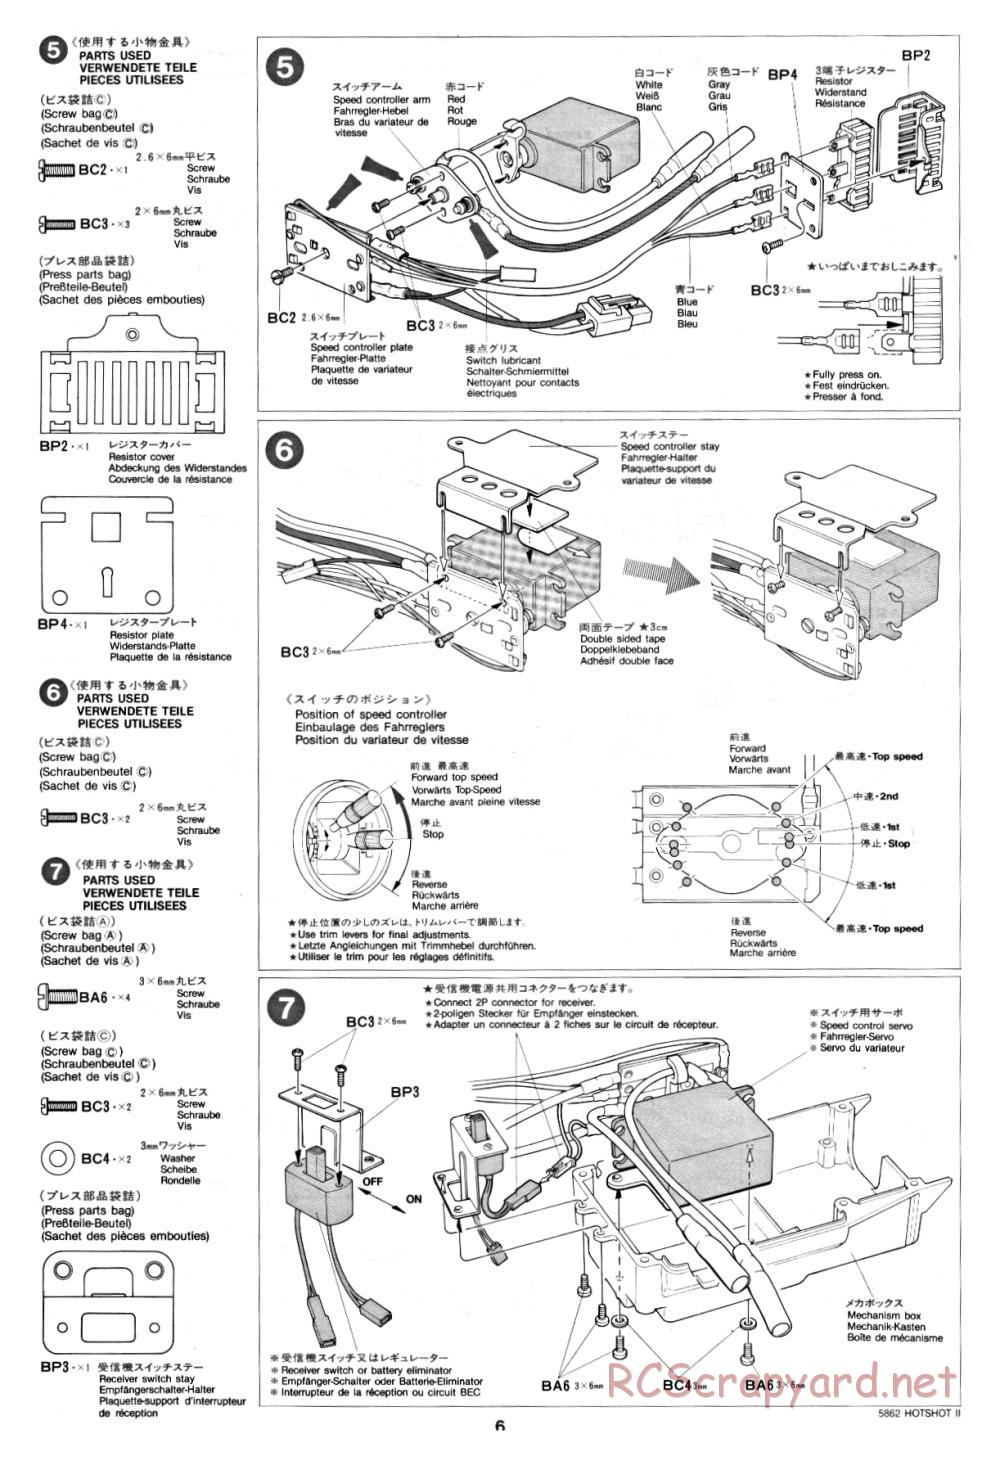 Tamiya - Hot-Shot II - 58062 - Manual - Page 6